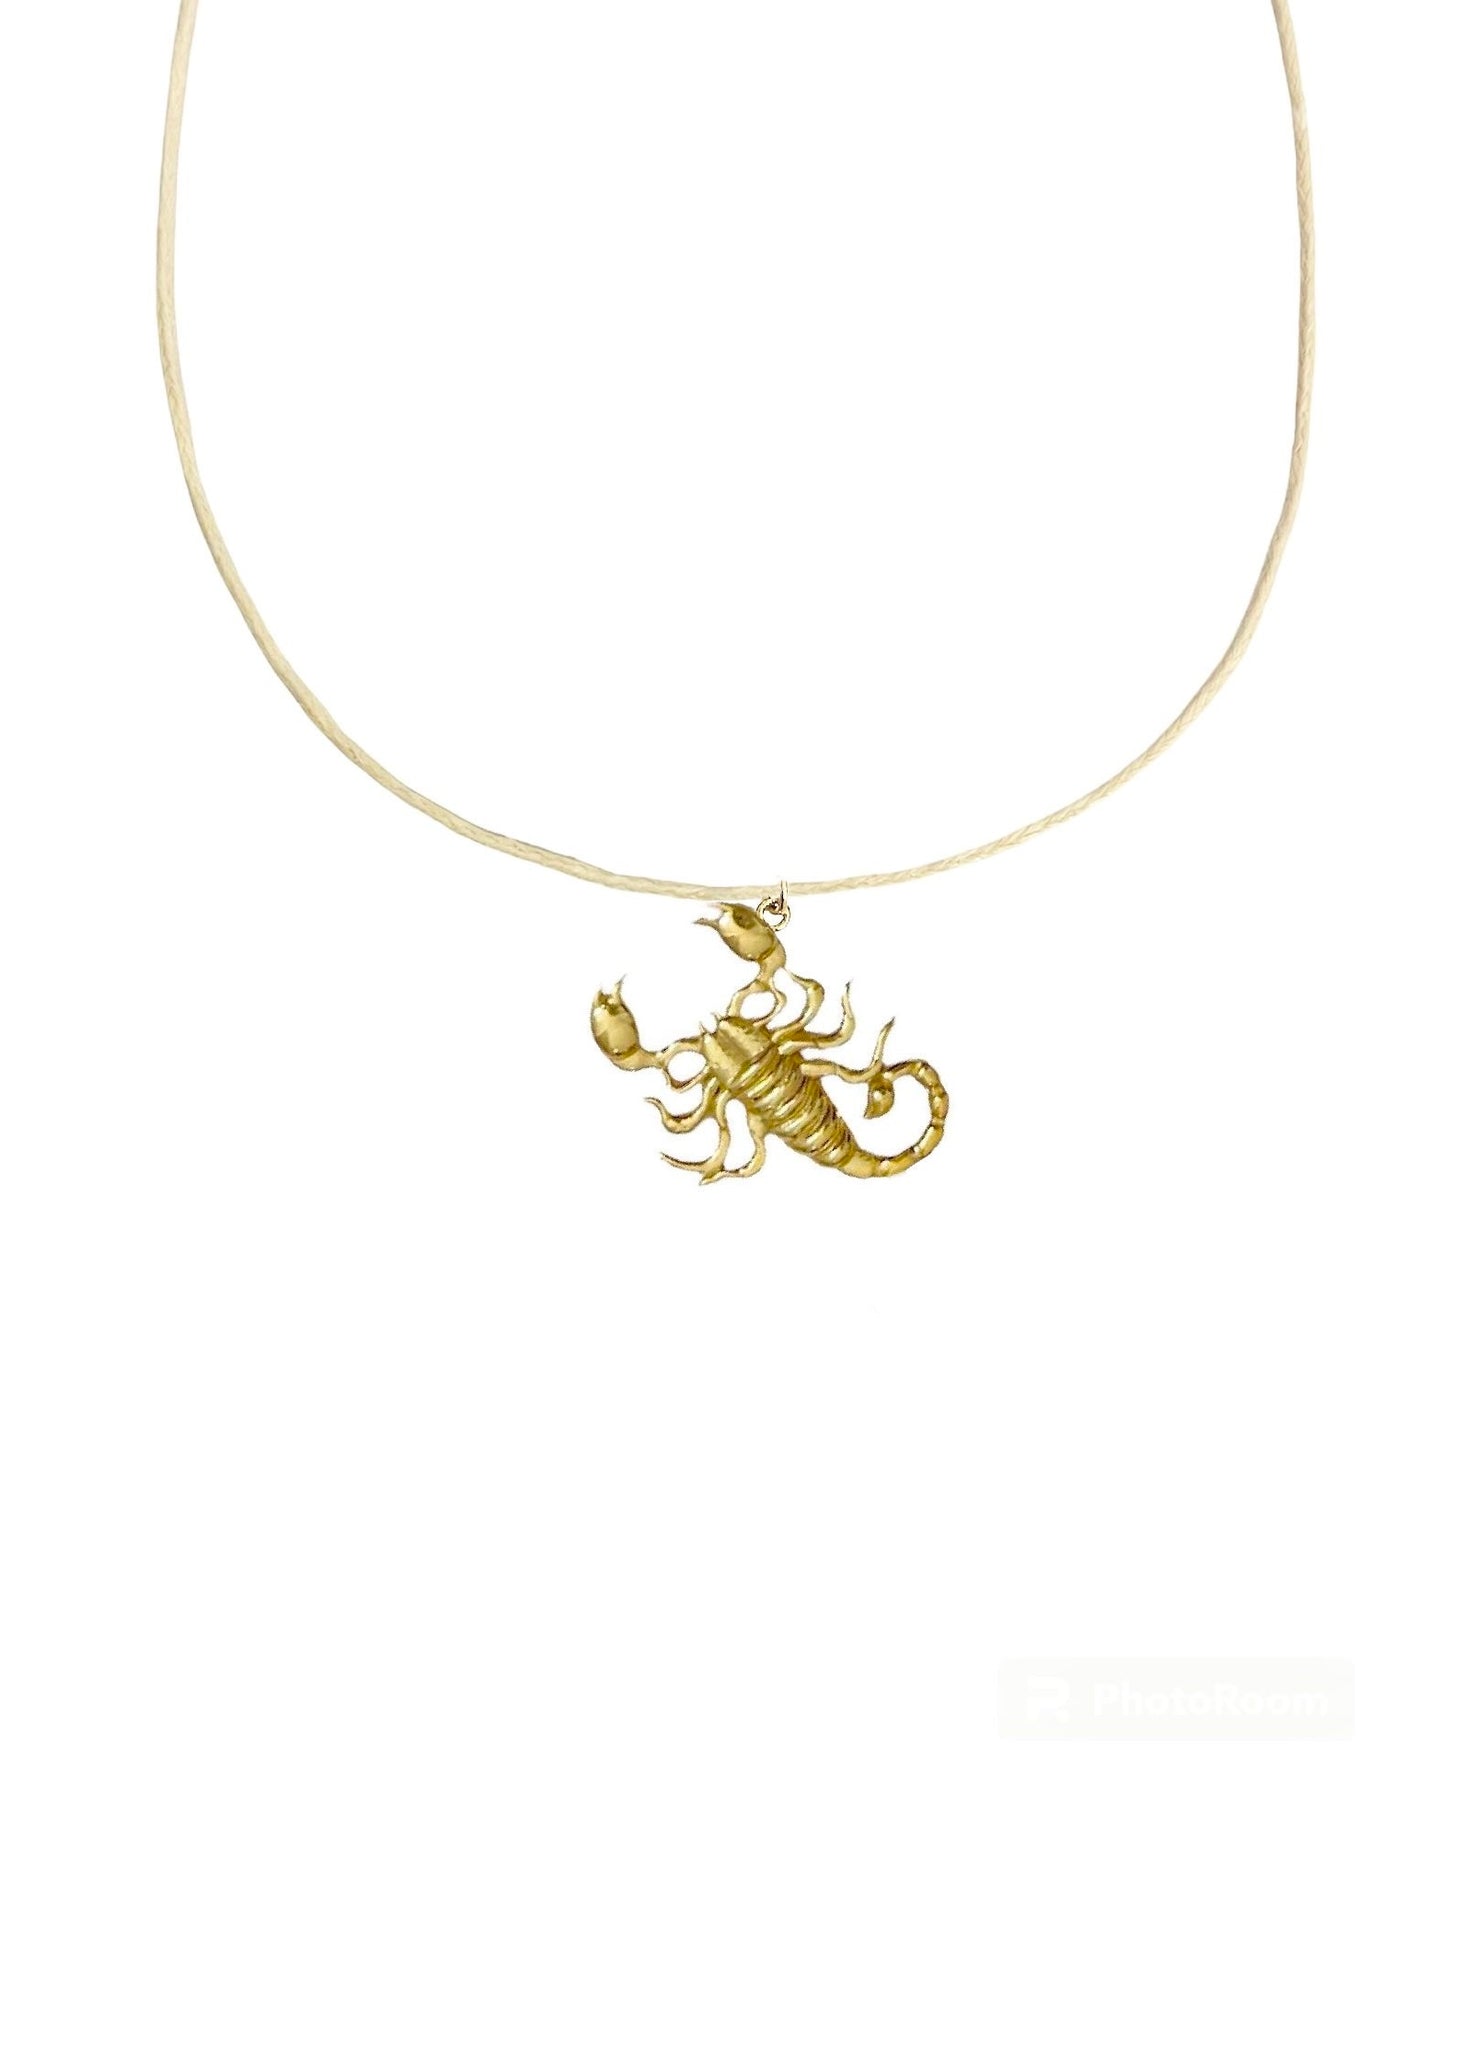 Scorpio Boyfriend Necklace - Small